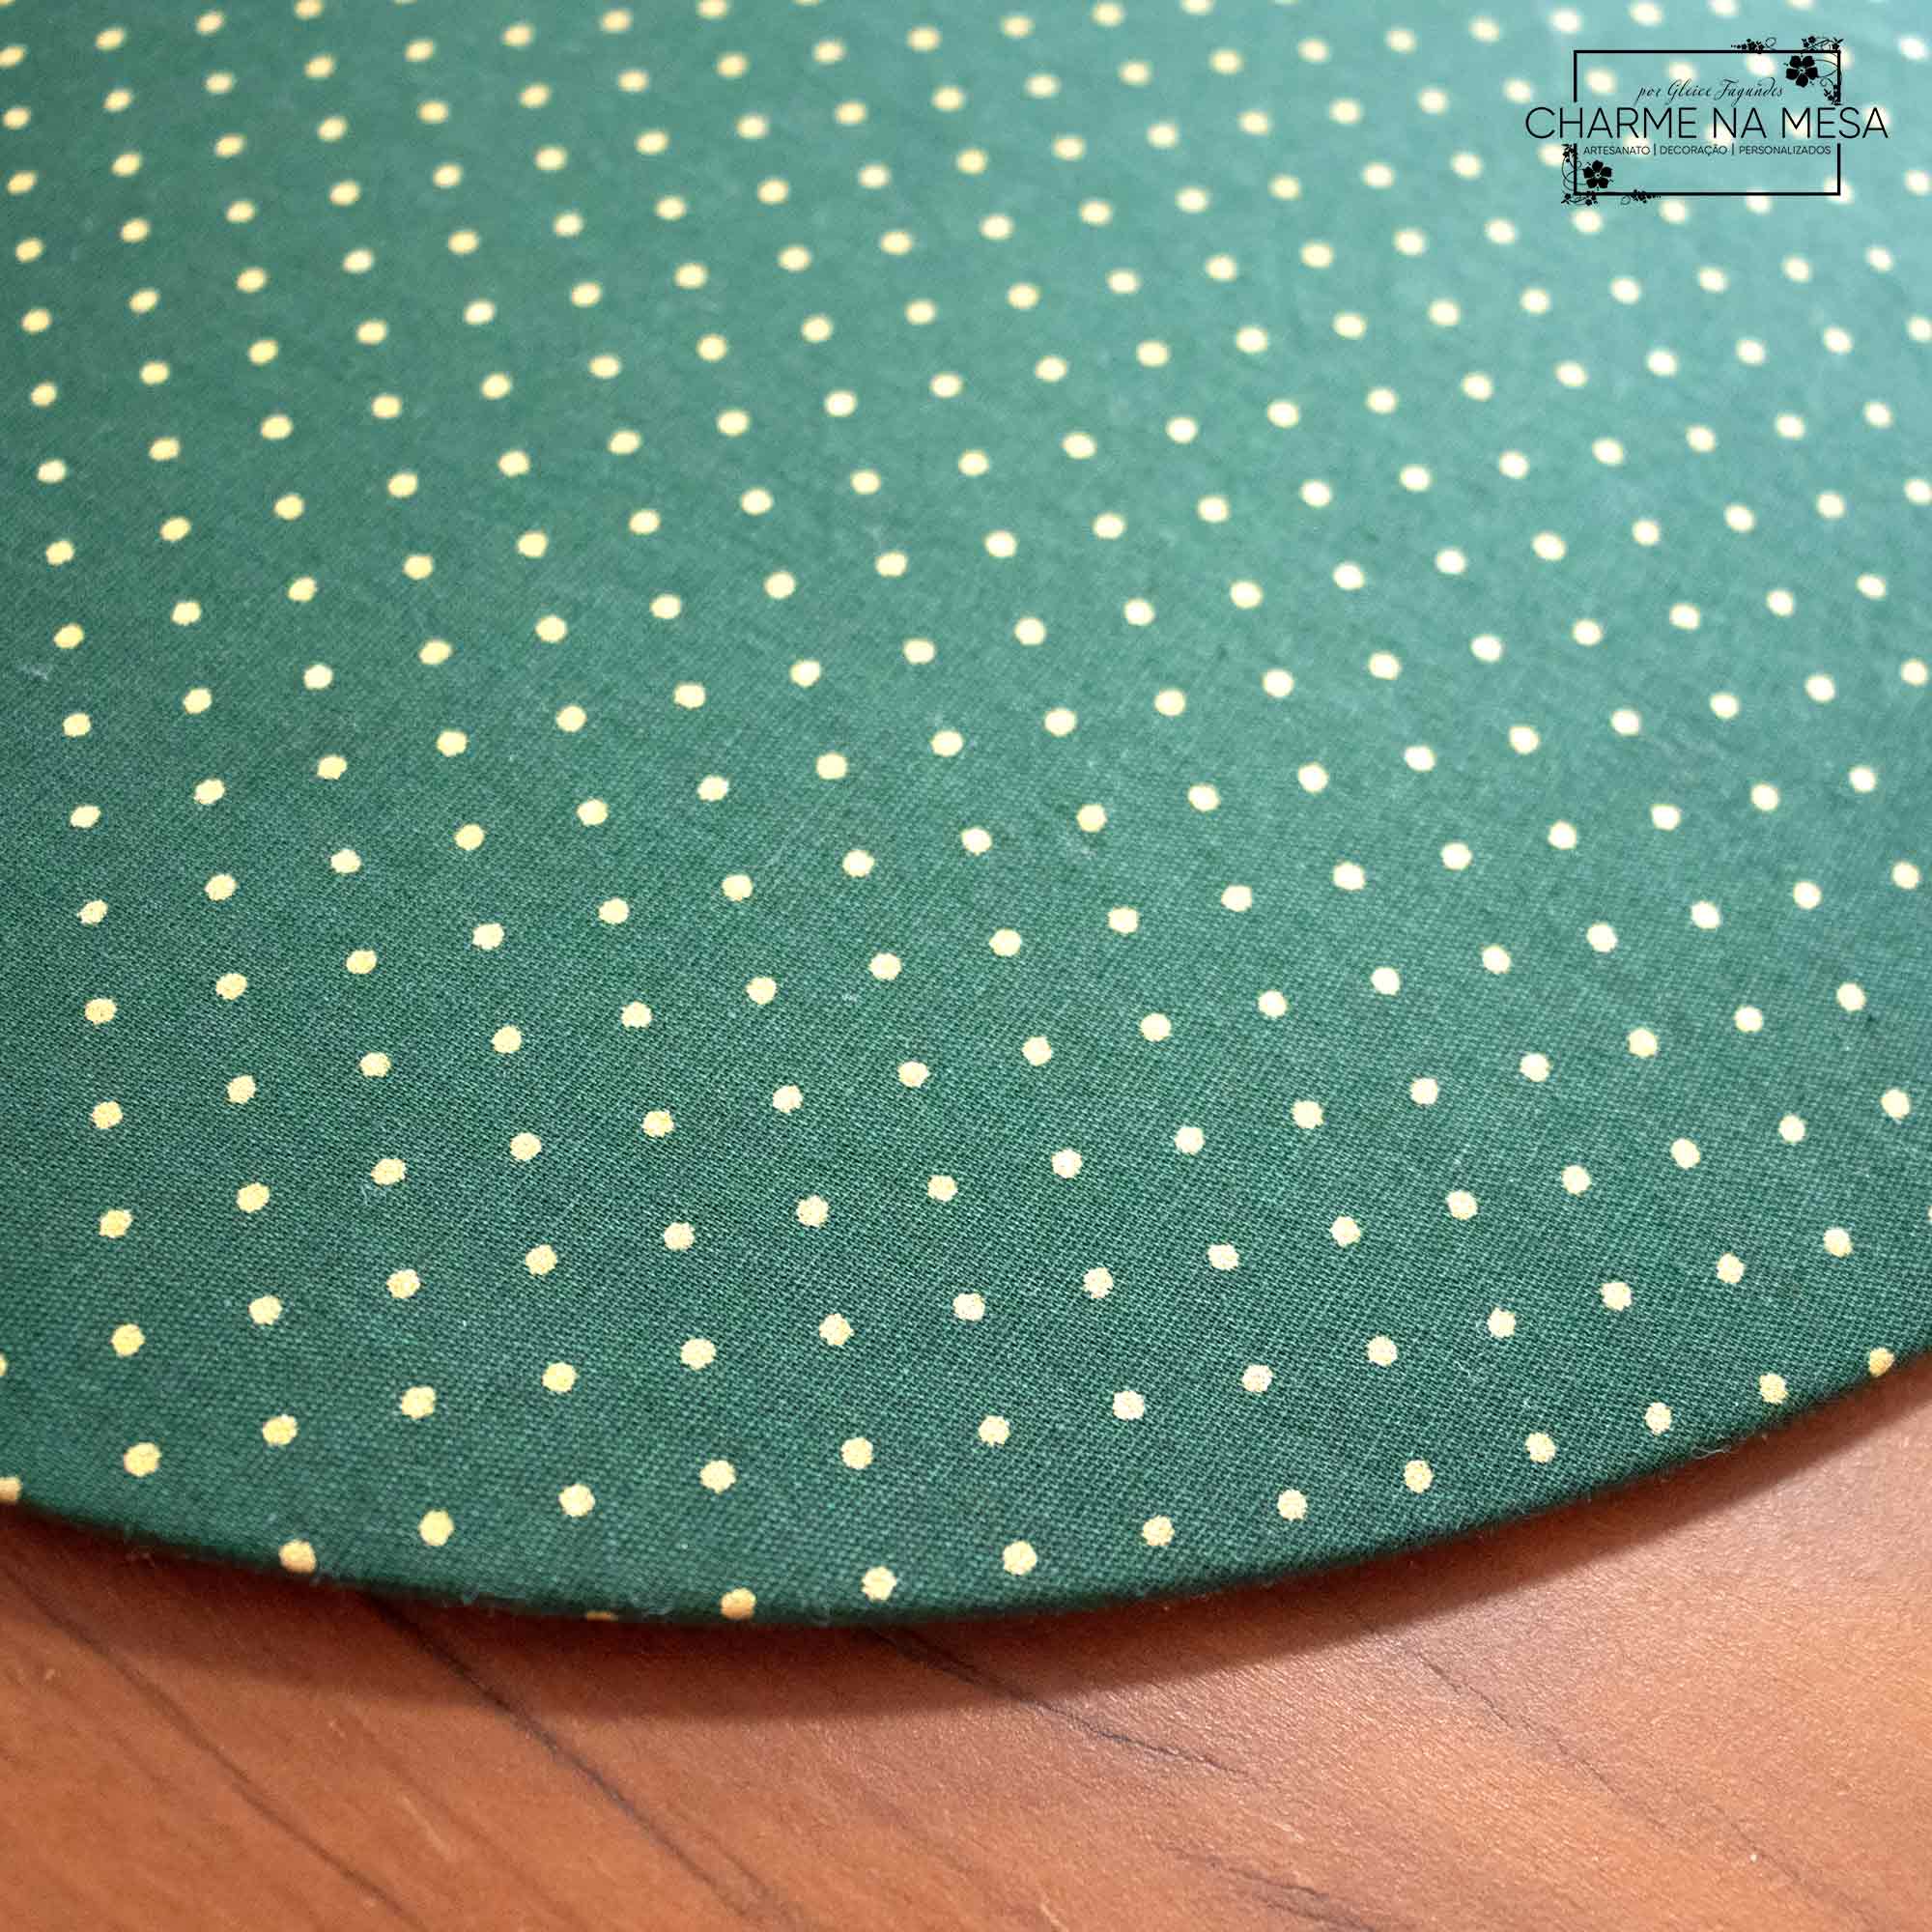 Capa p/ Jogo Americano Verde com Poá Dourado, tecido Tricoline - Foto 1